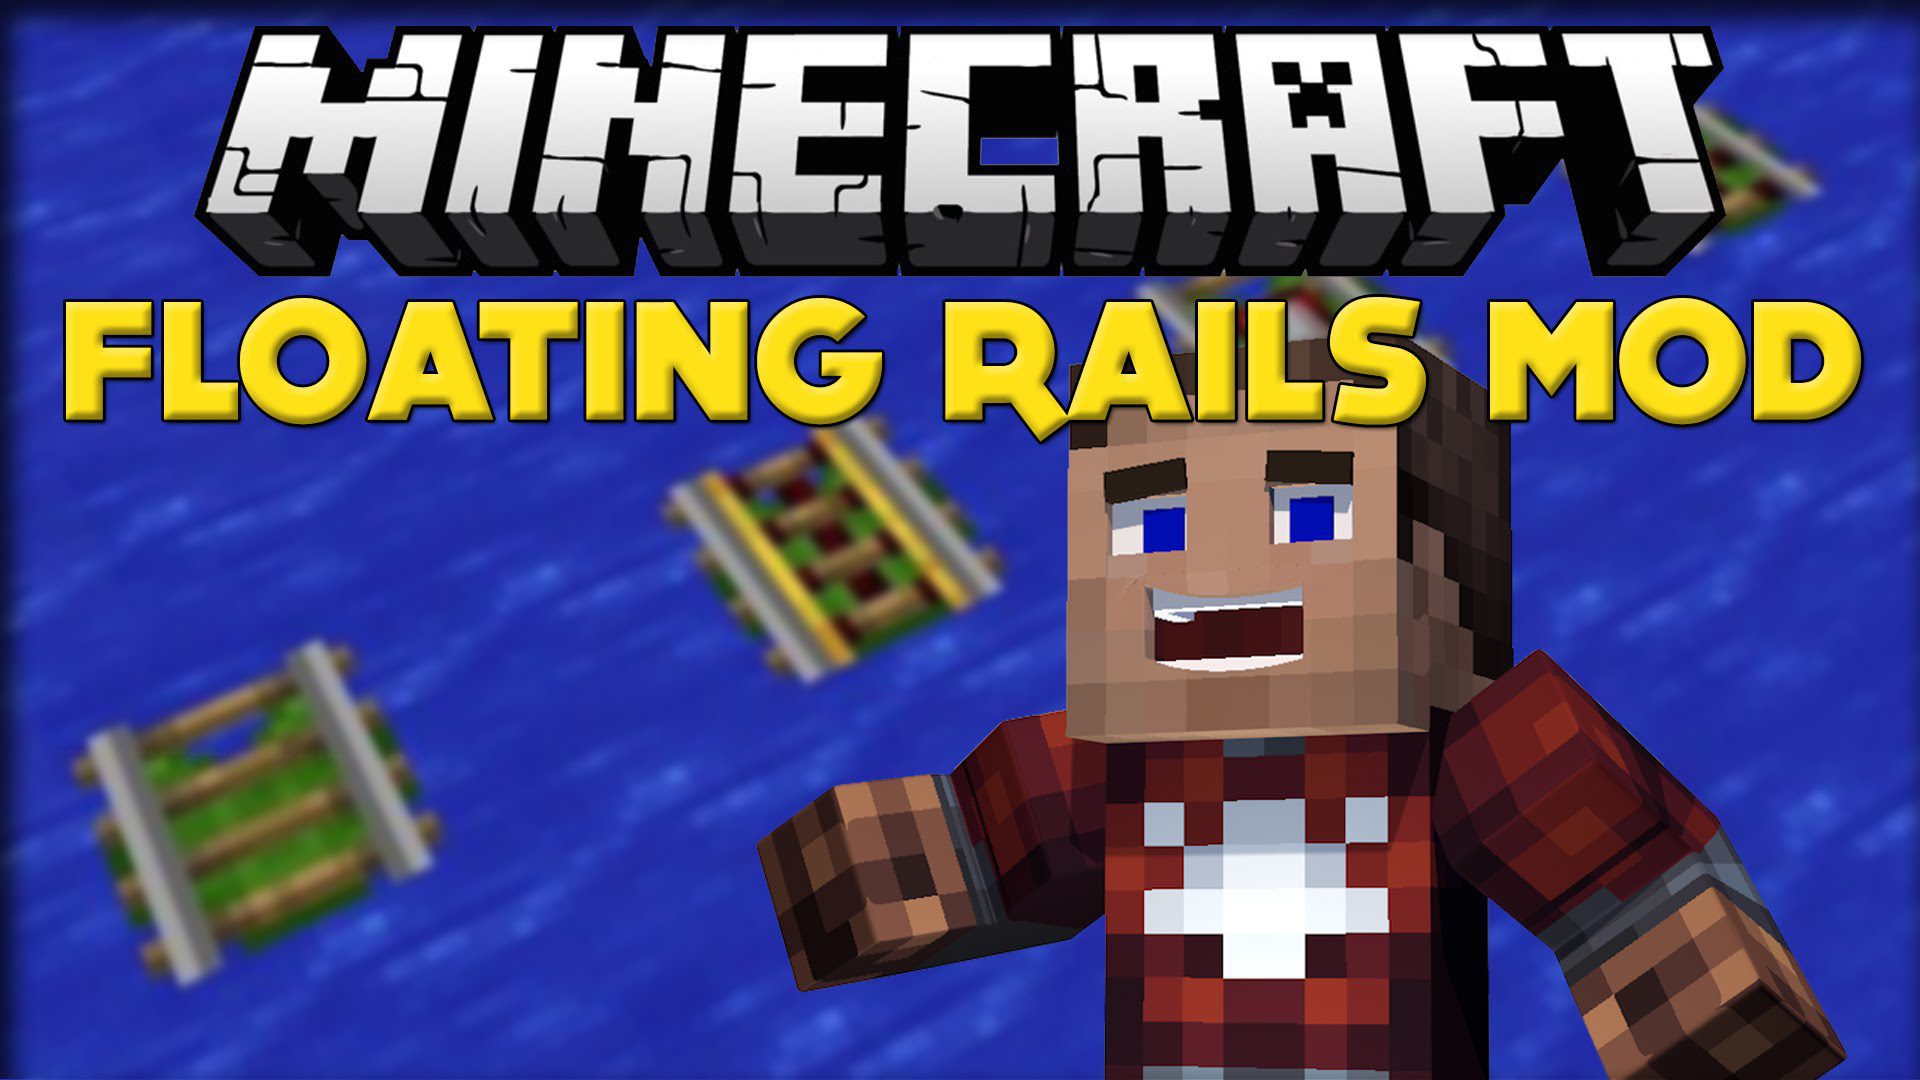 Floating Rails Mod